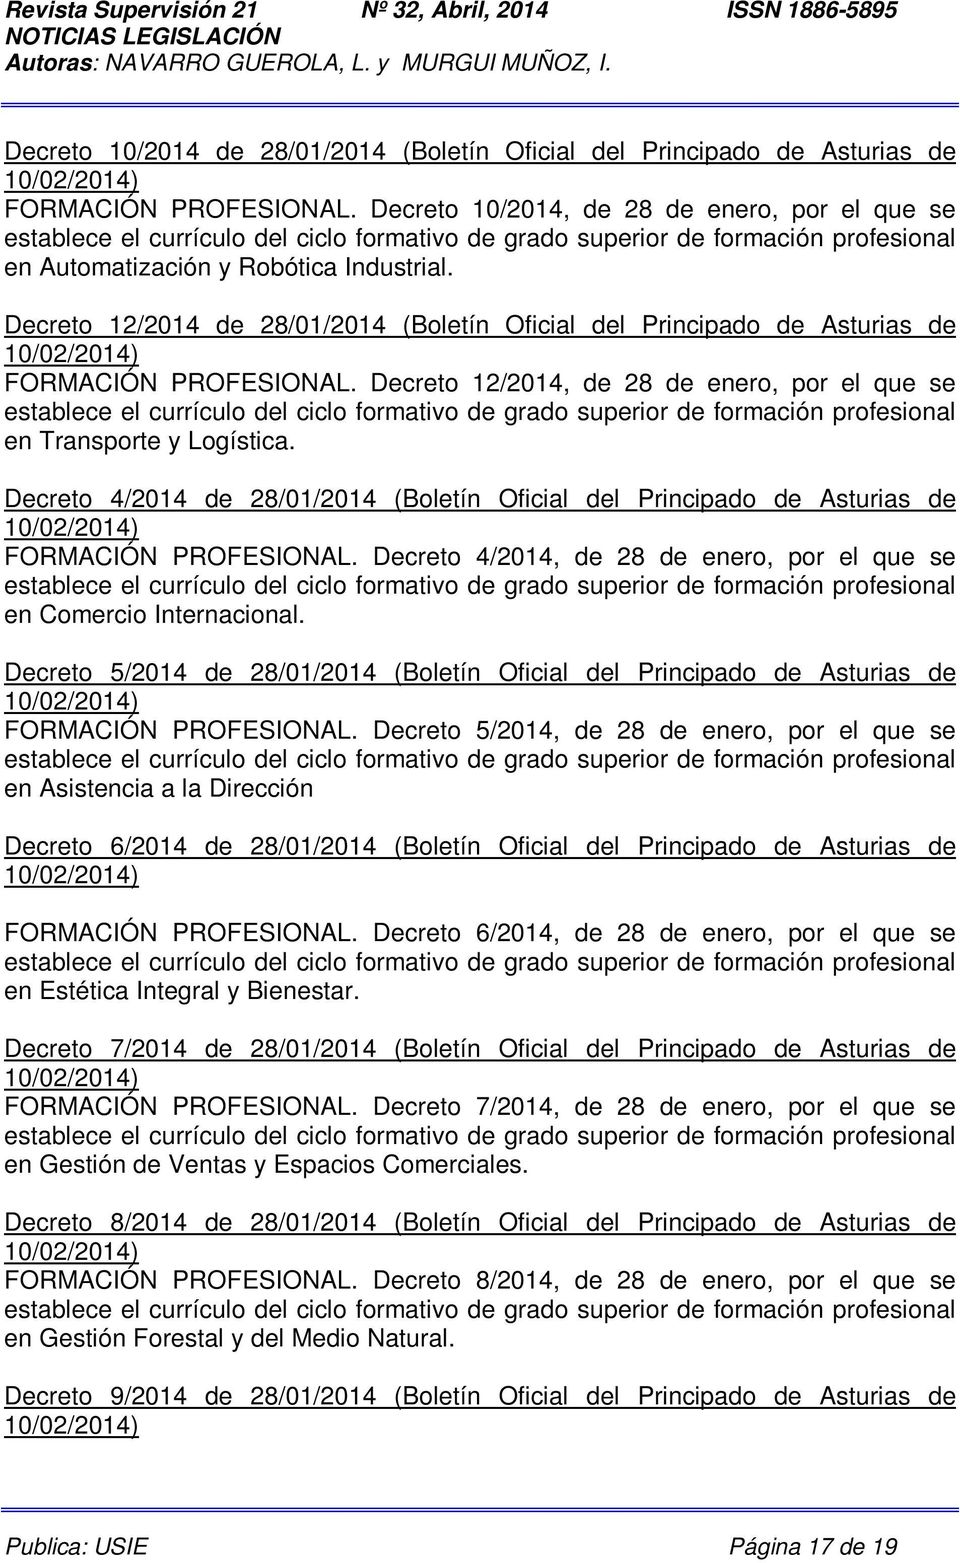 Decreto 4/2014 de 28/01/2014 (Boletín Oficial del Principado de Asturias de 10/02/2014) FORMACIÓN PROFESIONAL. Decreto 4/2014, de 28 de enero, por el que se en Comercio Internacional.